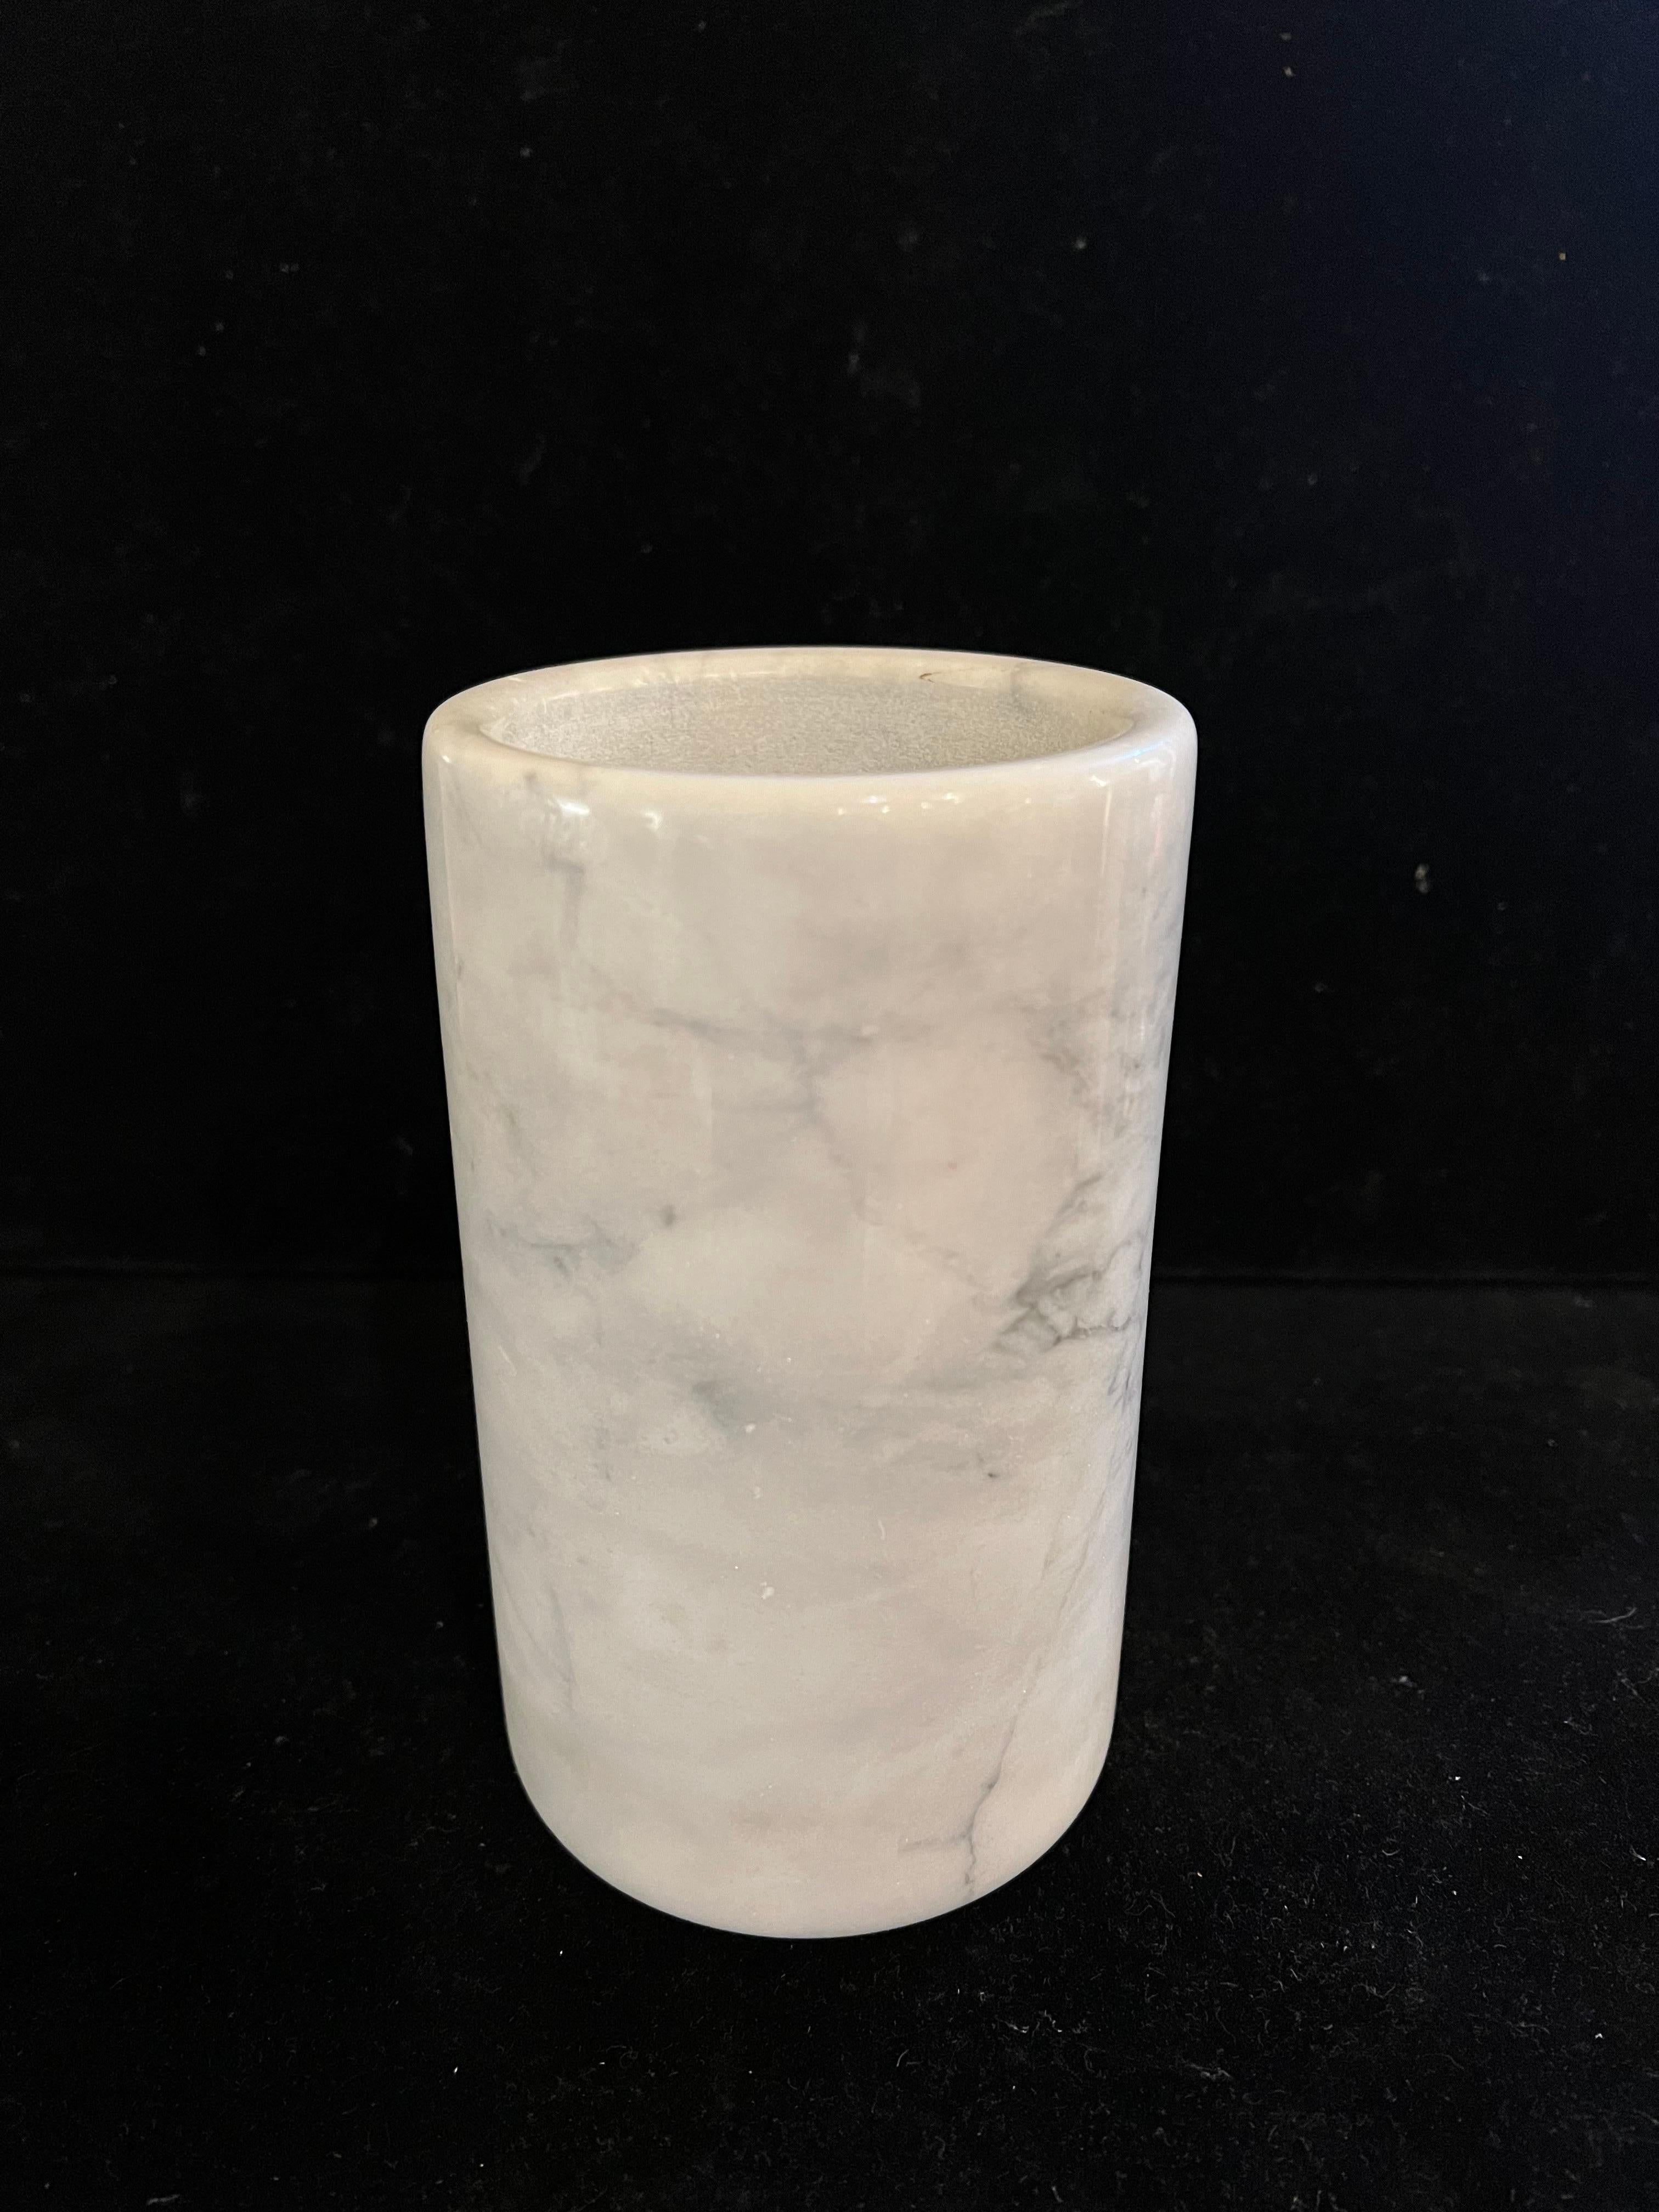 beau vase en marbre blanc avec bord en forme de nez de bœuf, circa 1980 excellent état et couleur.